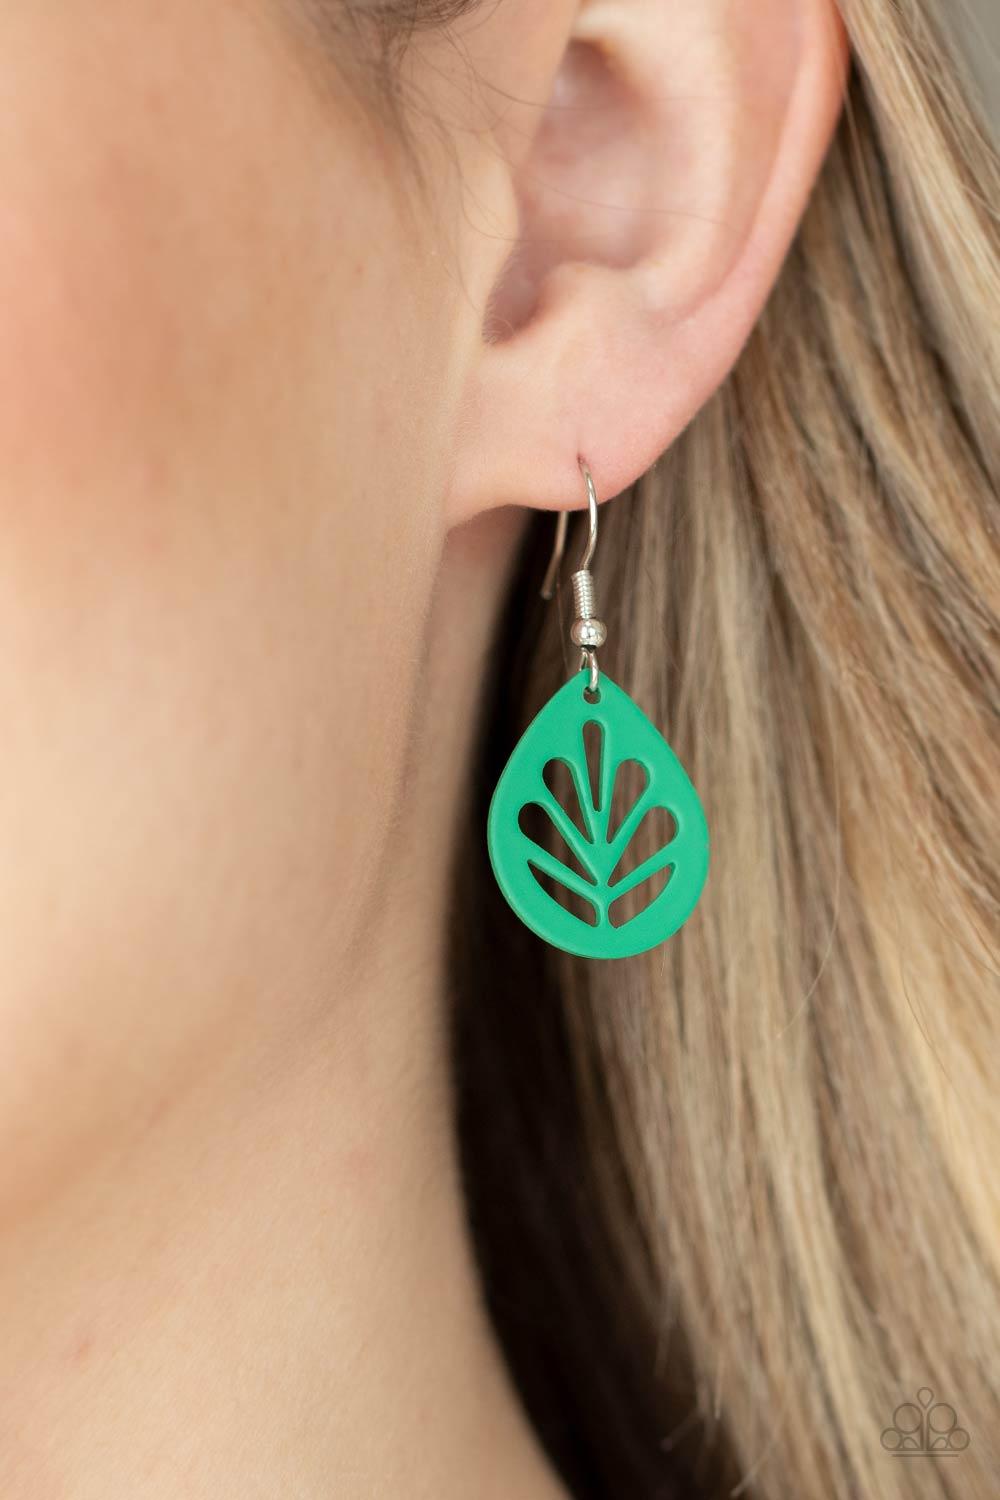 LEAF Yourself Wide Open Green Earrings - Jewelry by Bretta